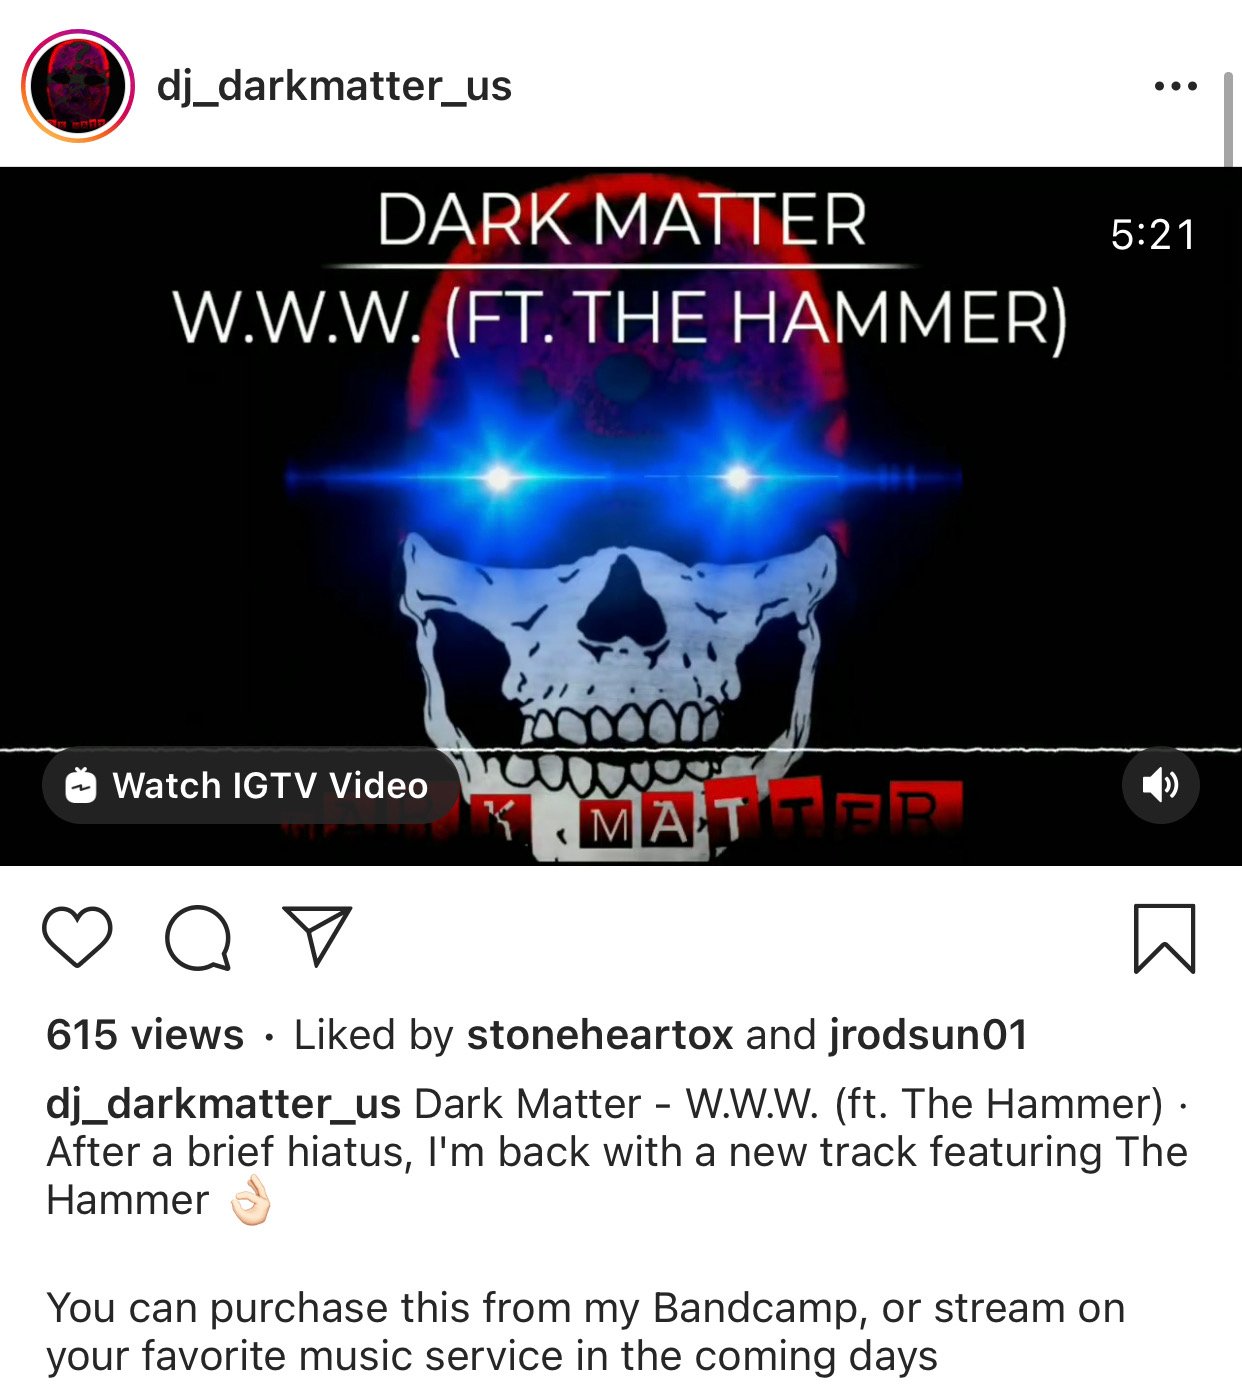 DJ Dark Matter song W.W.W.(White Western World) featuring The Hammer